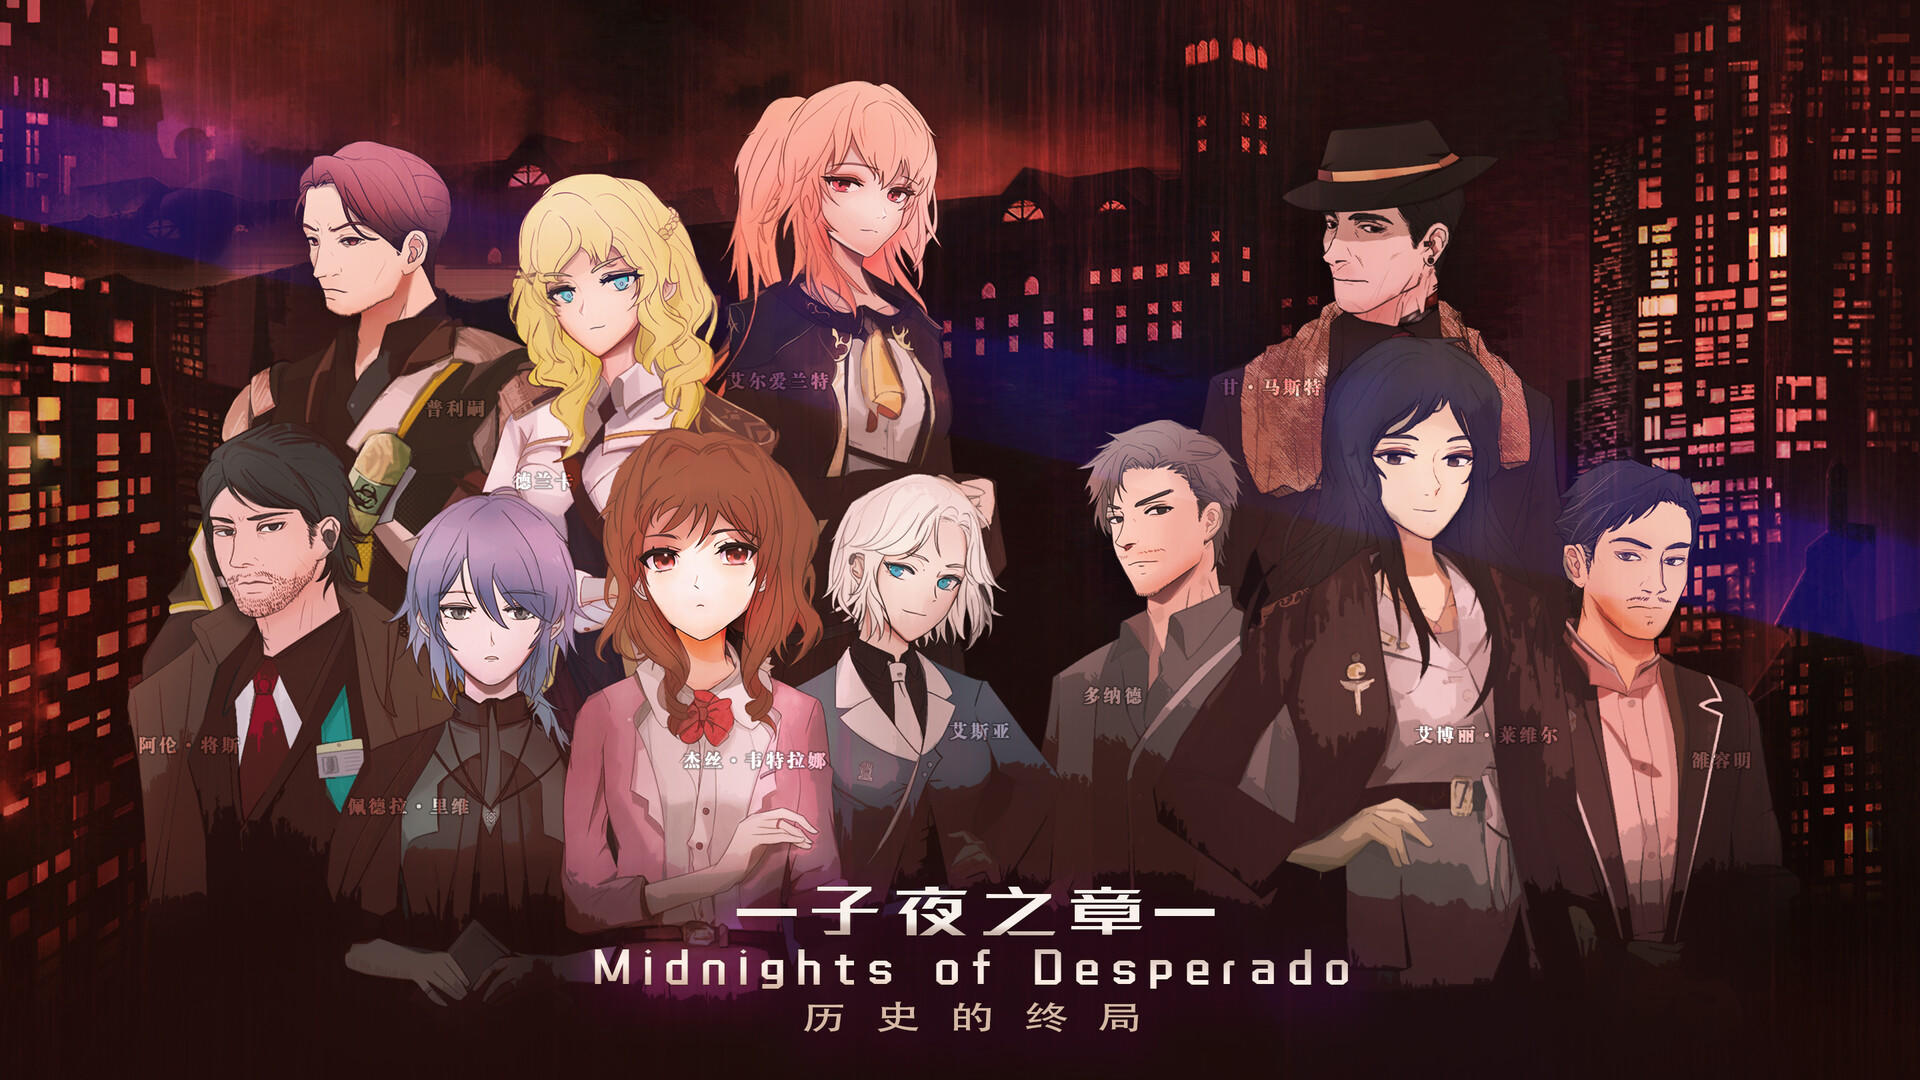 Screenshot 1 of Chương Nửa đêm: Sự kết thúc của lịch sử～MidNights of Desperado～ 